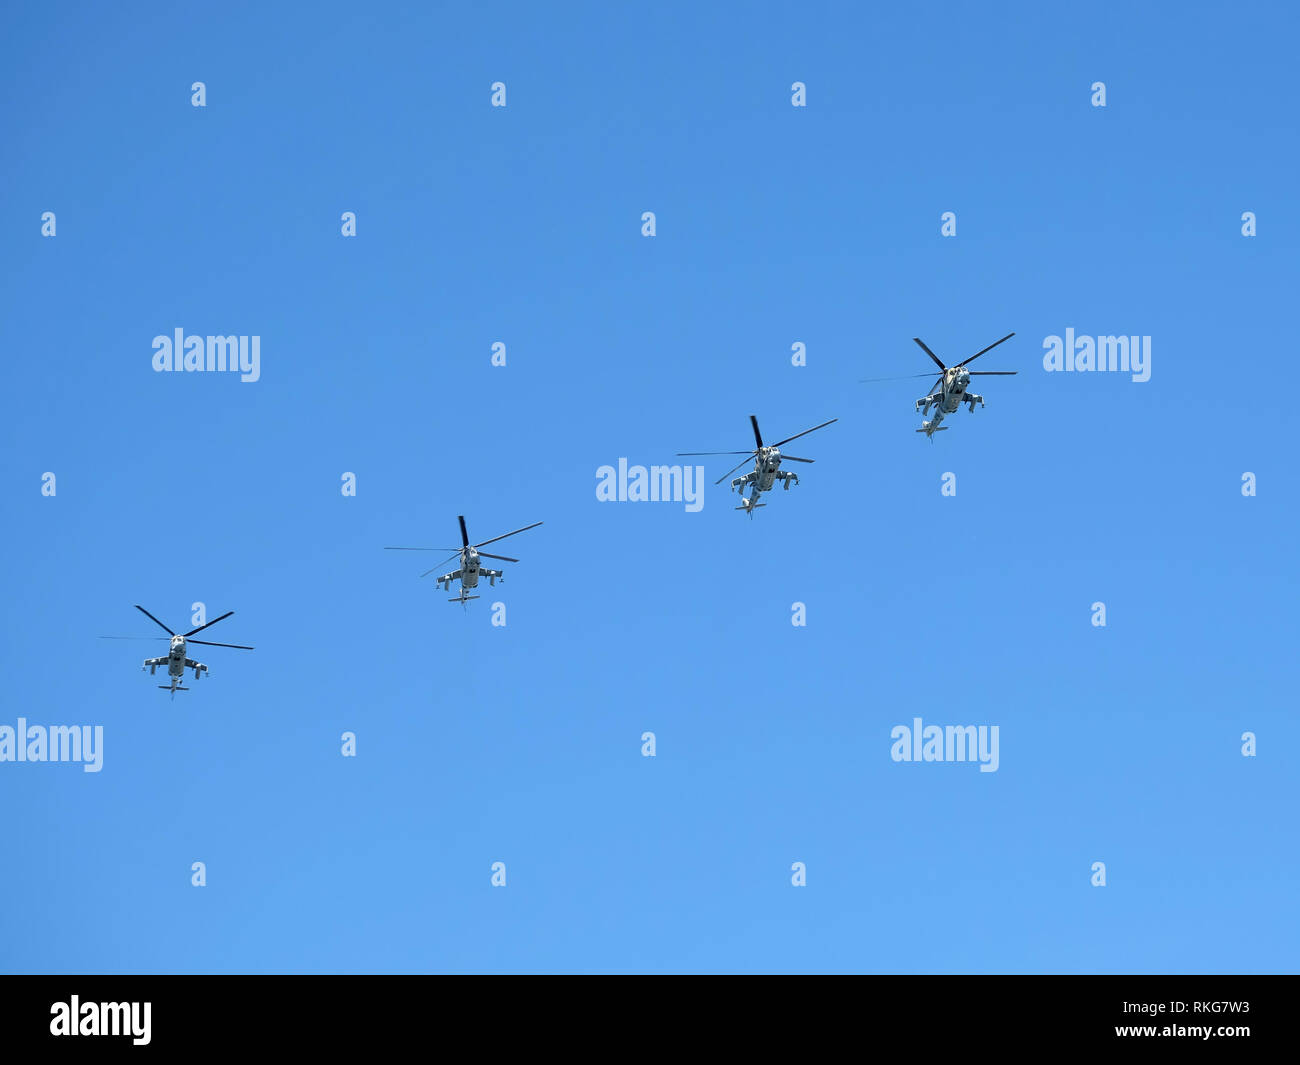 Grupo de cuatro helicópteros militares rusos MI-24P (Hind) en el azul claro del cielo en vuelo el 9 de mayo de 2018, en Moscú. Contenido editorial Foto de stock